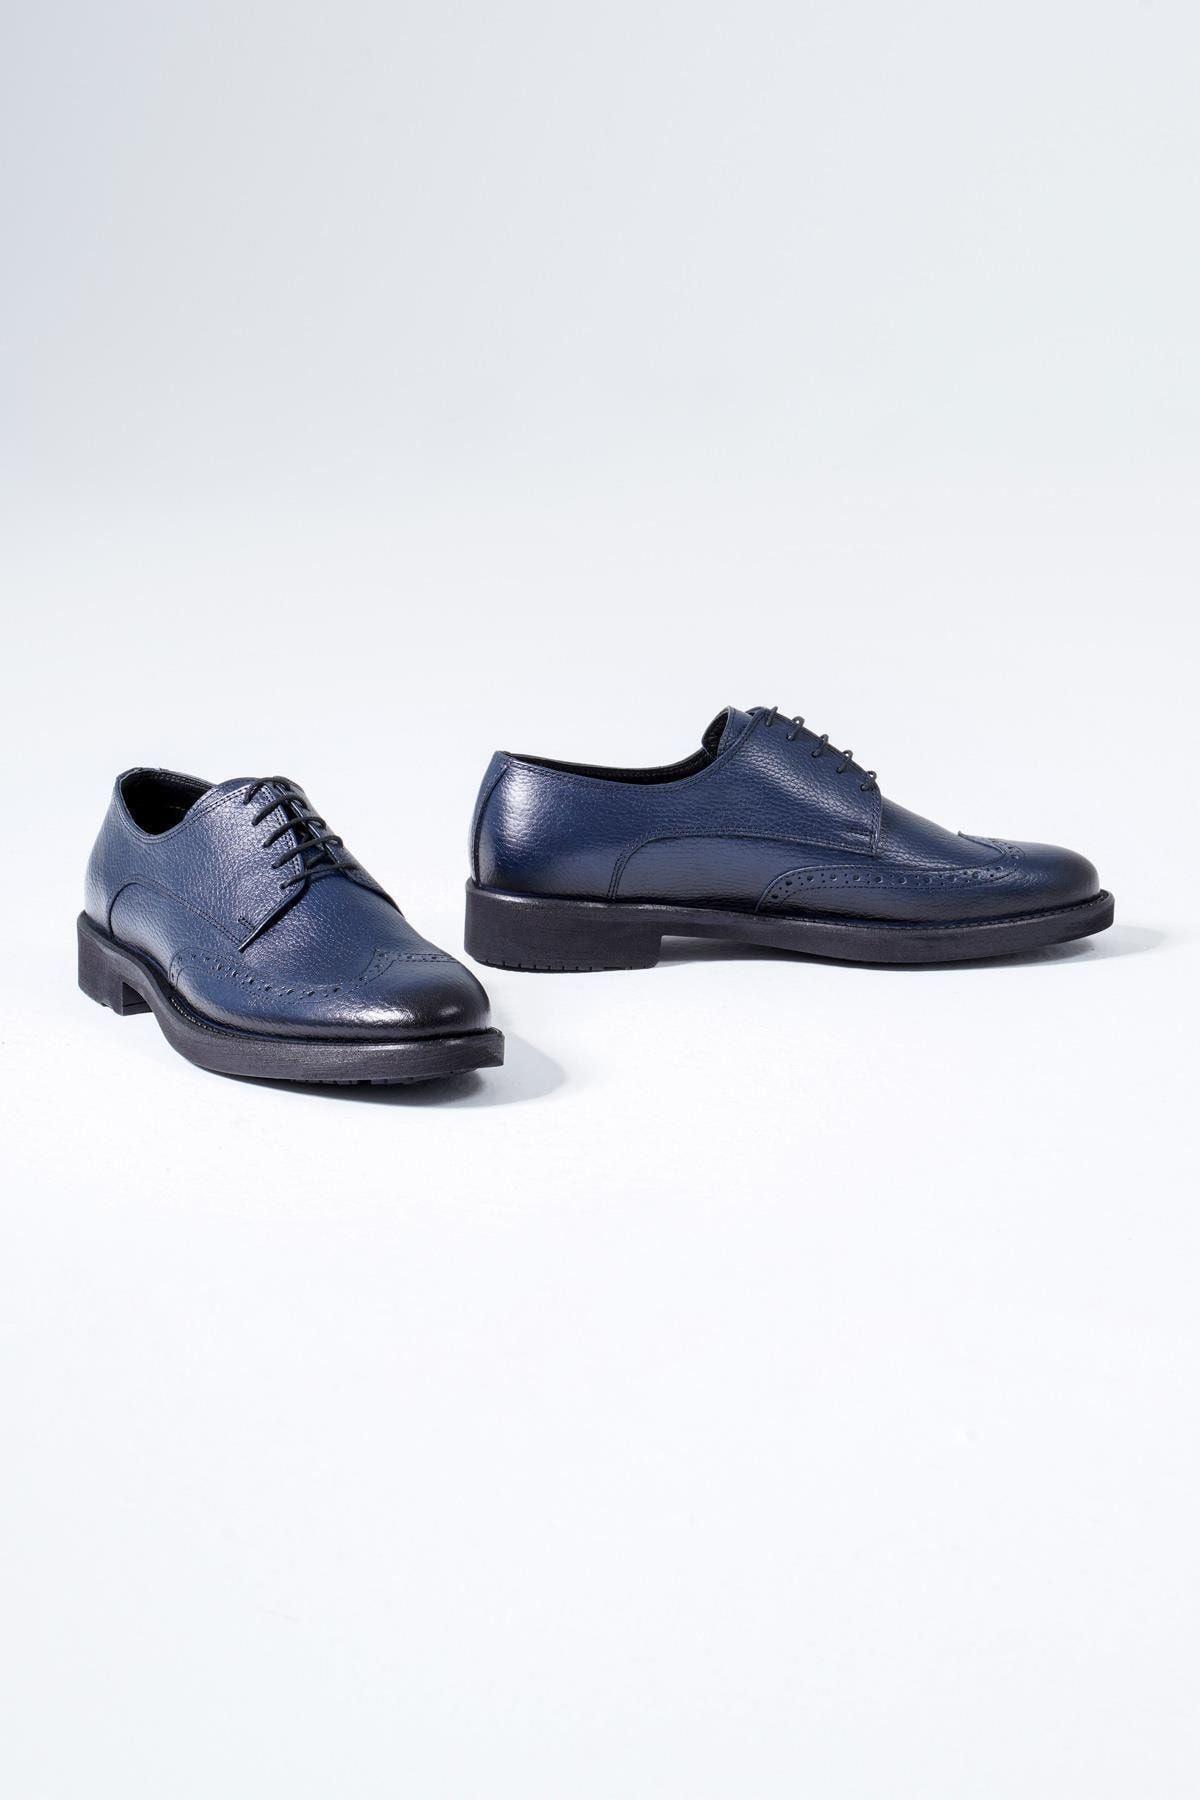 CZ London Hakiki Deri Erkek Klasik Ayakkabı Bağcıklı Oxford Ayakkabı